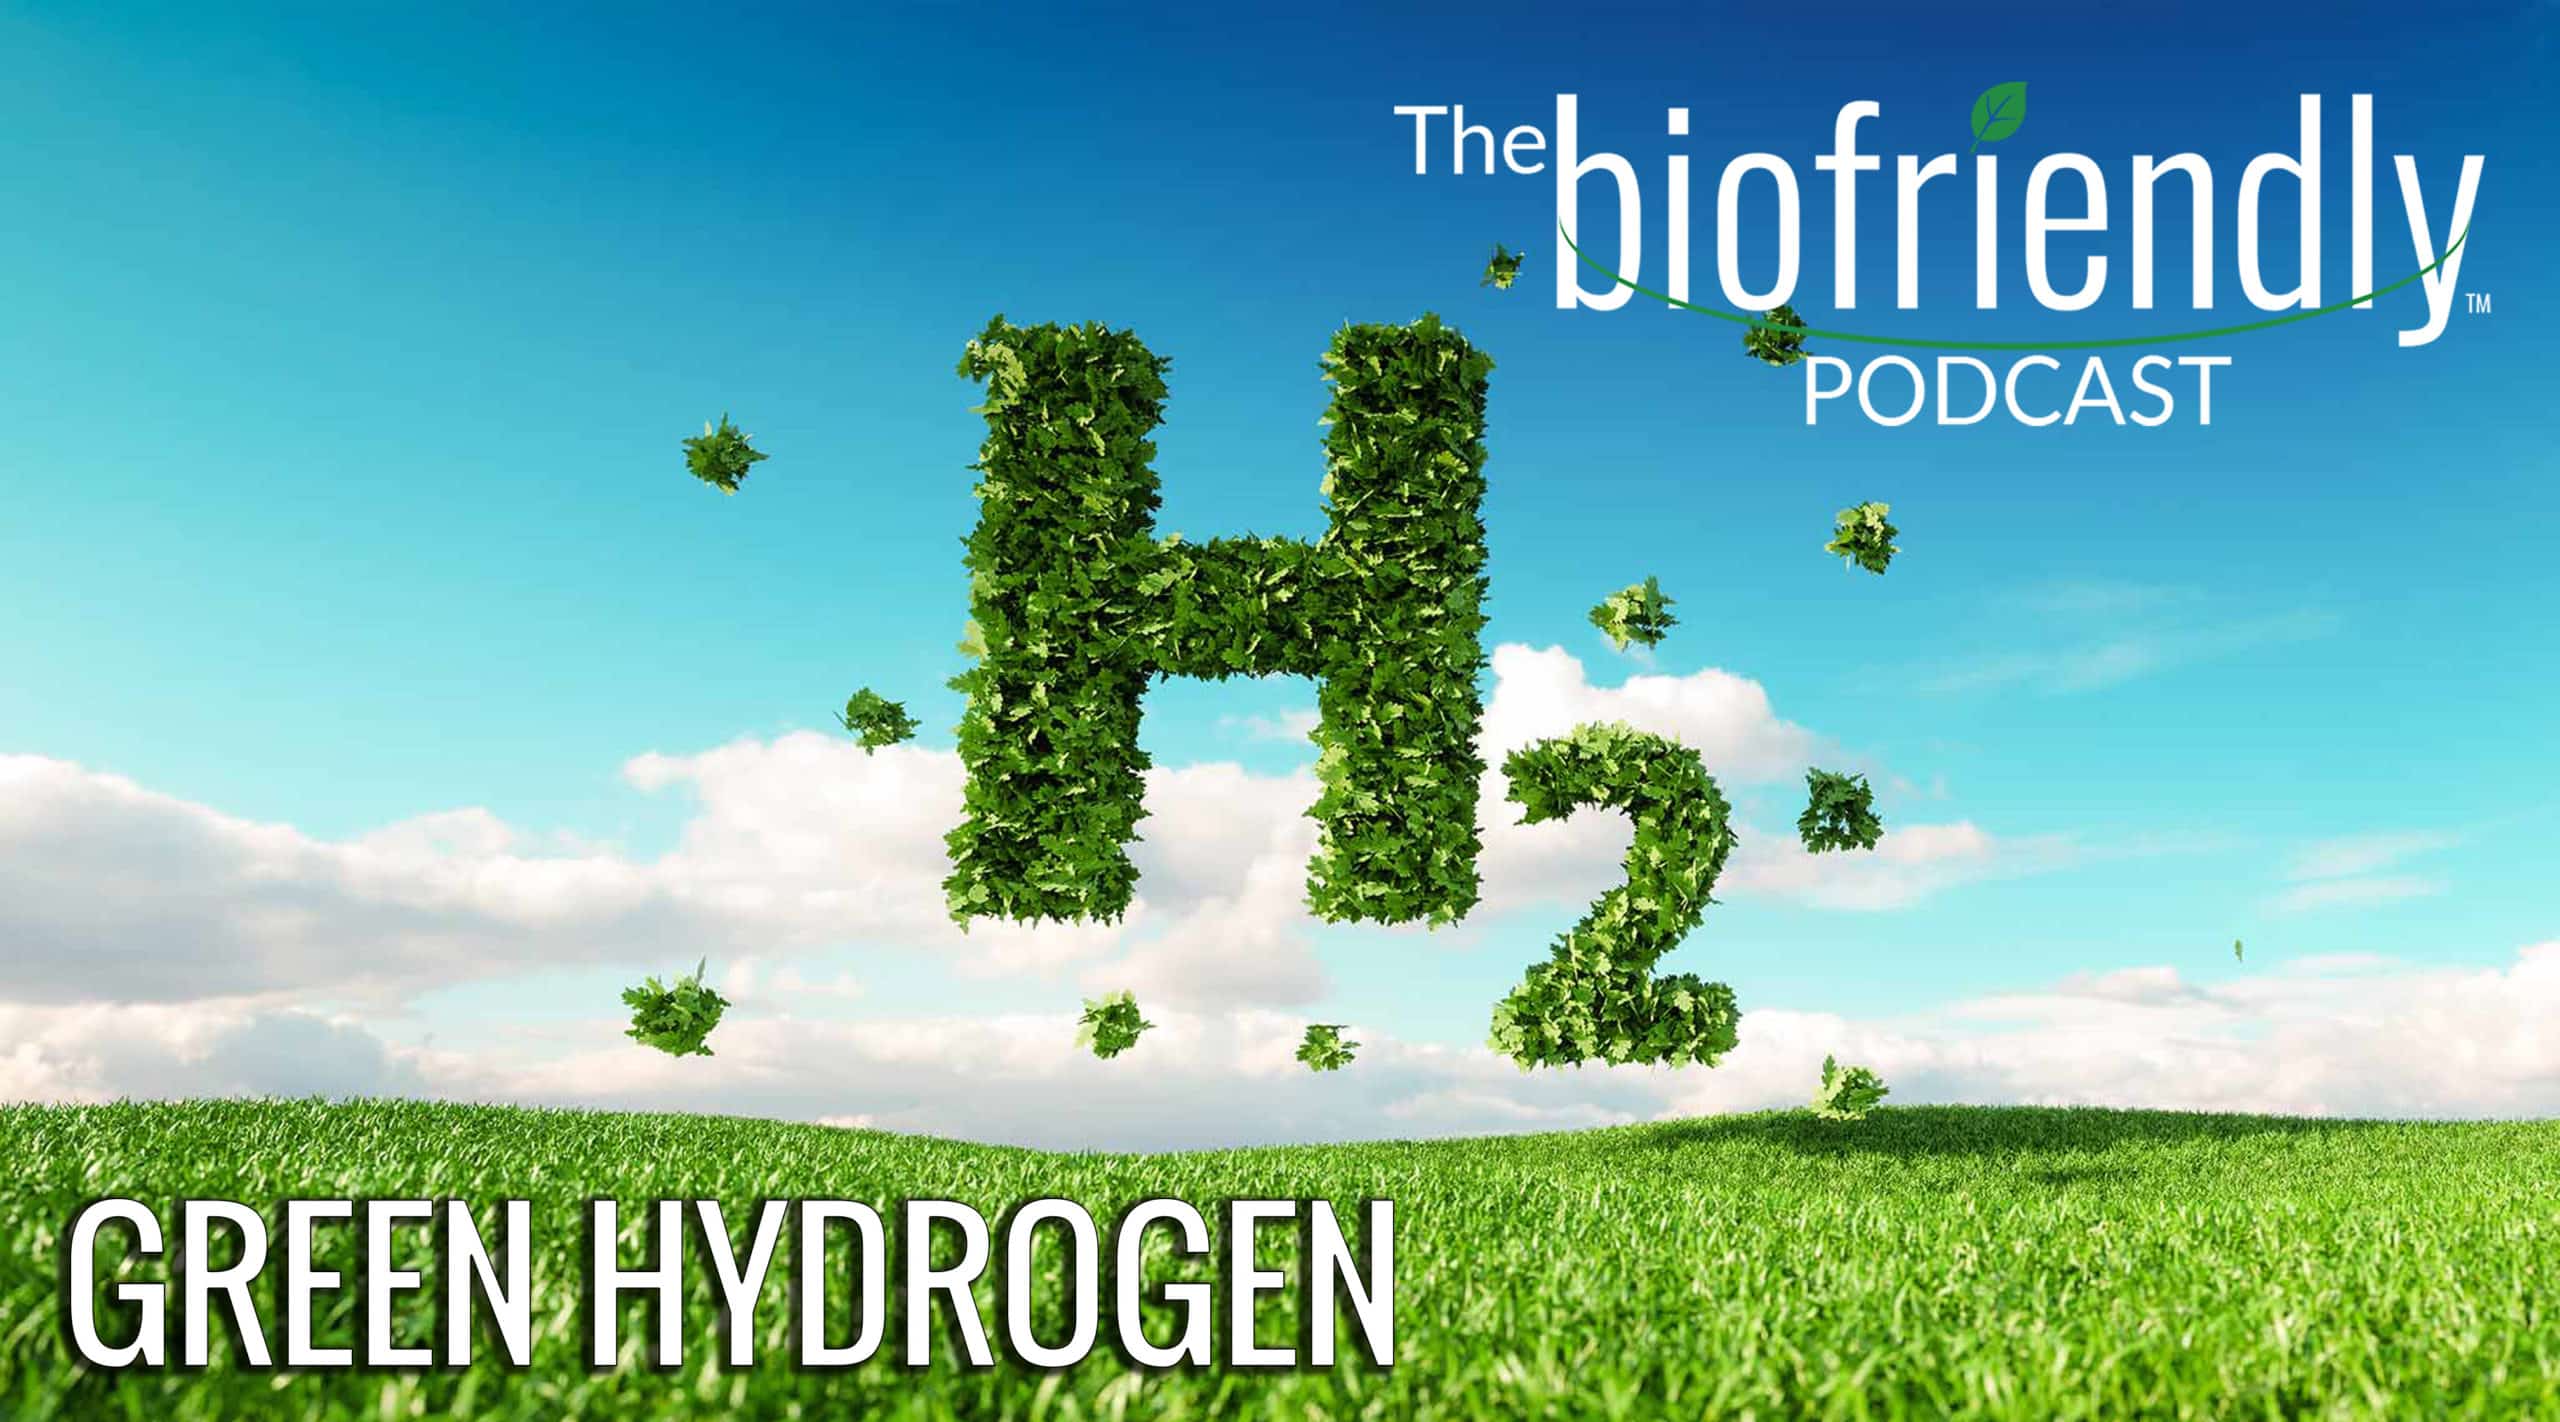 The Biofriendly Podcast - Episode 85 - Green Hydrogen